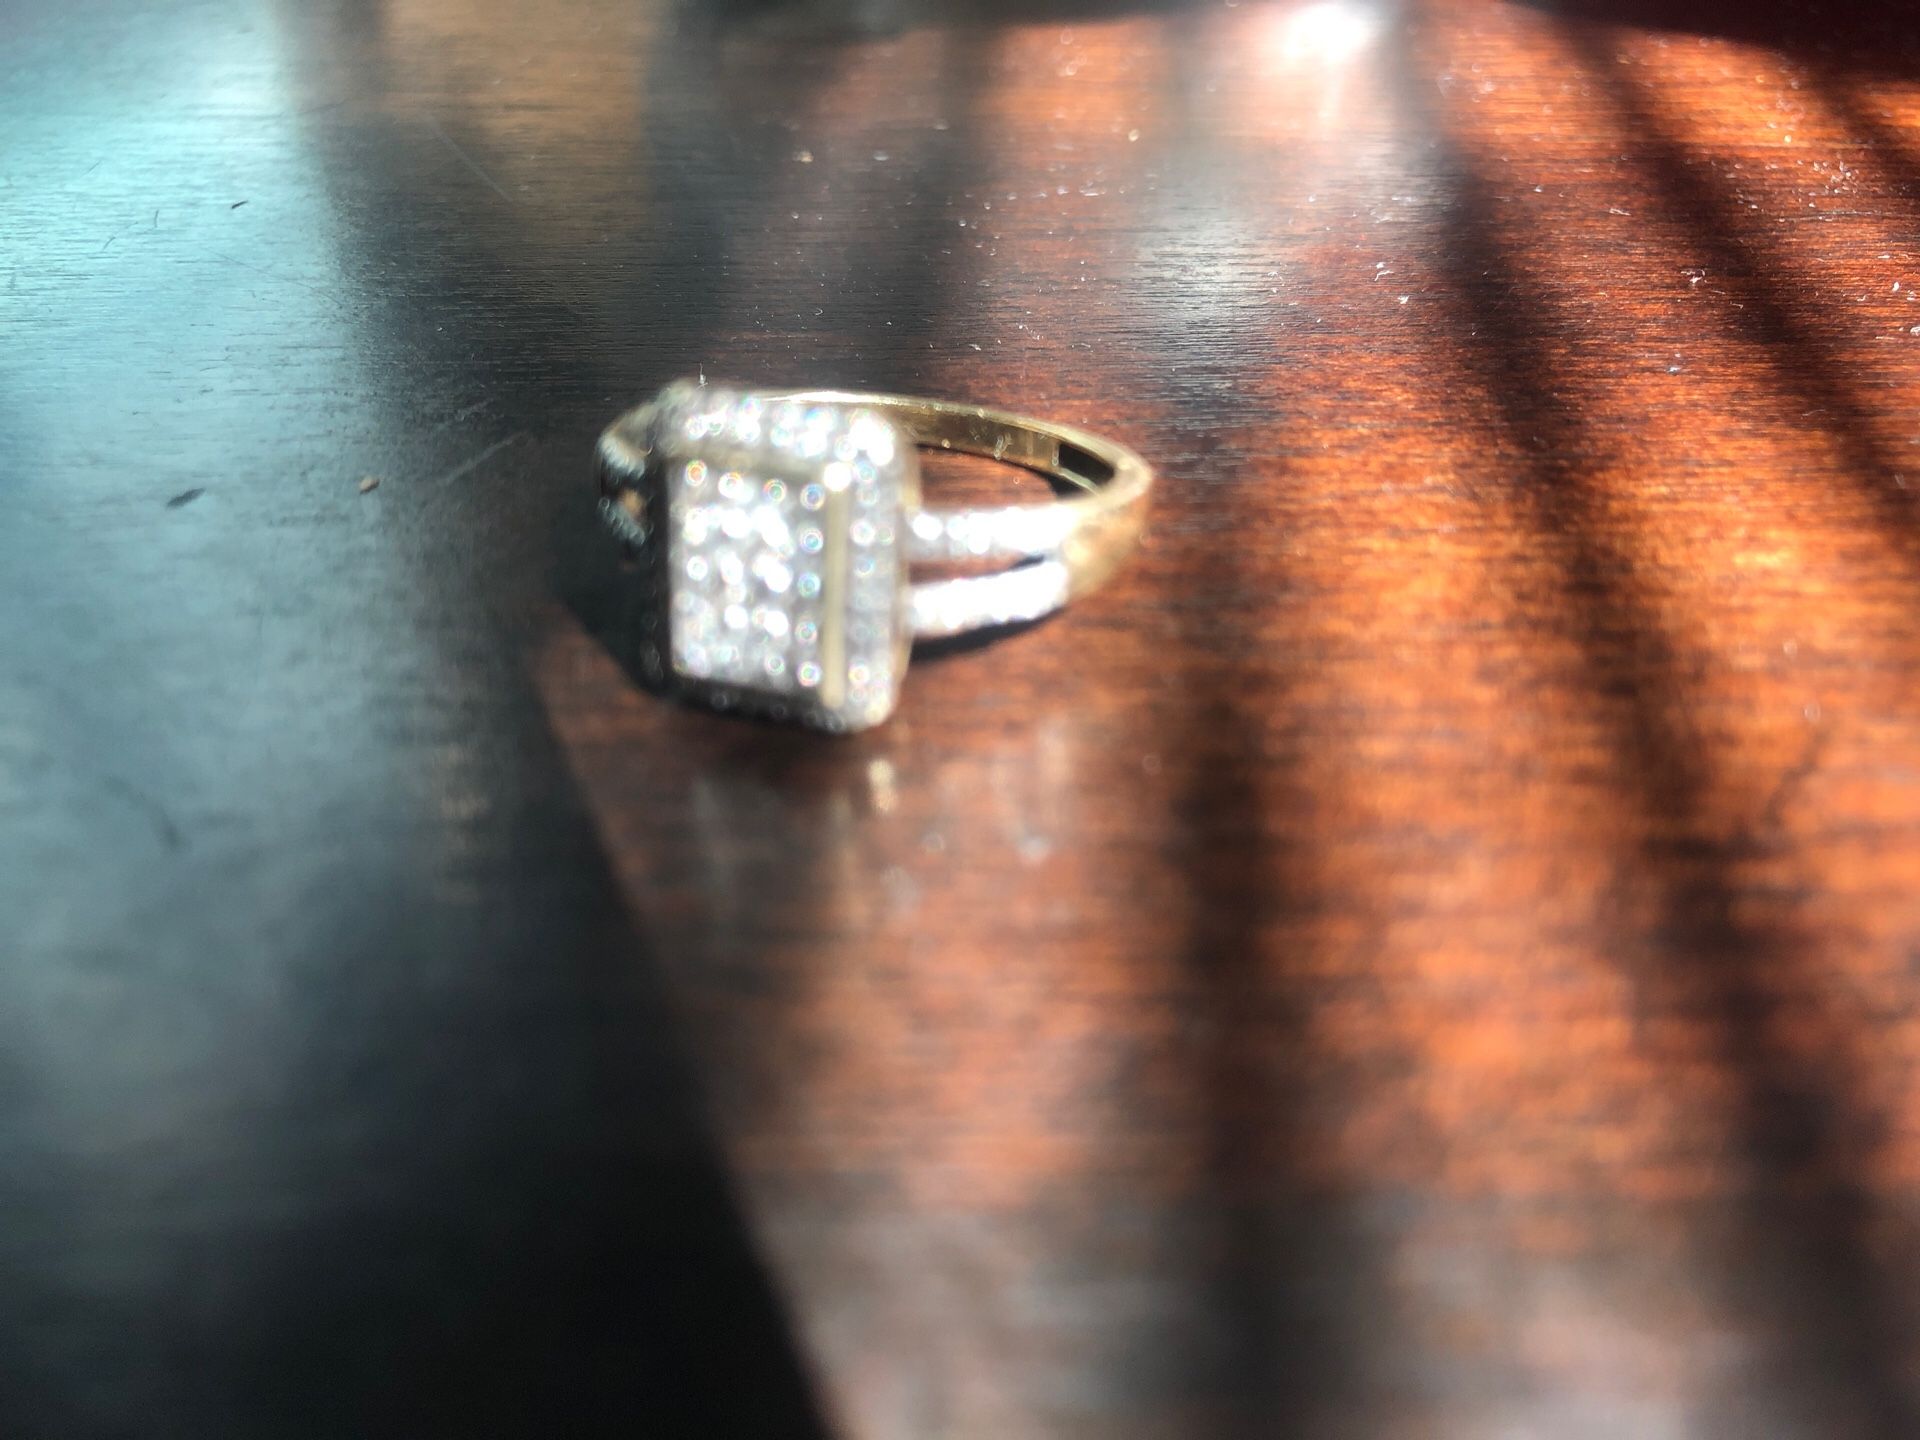 Diamond gold ring